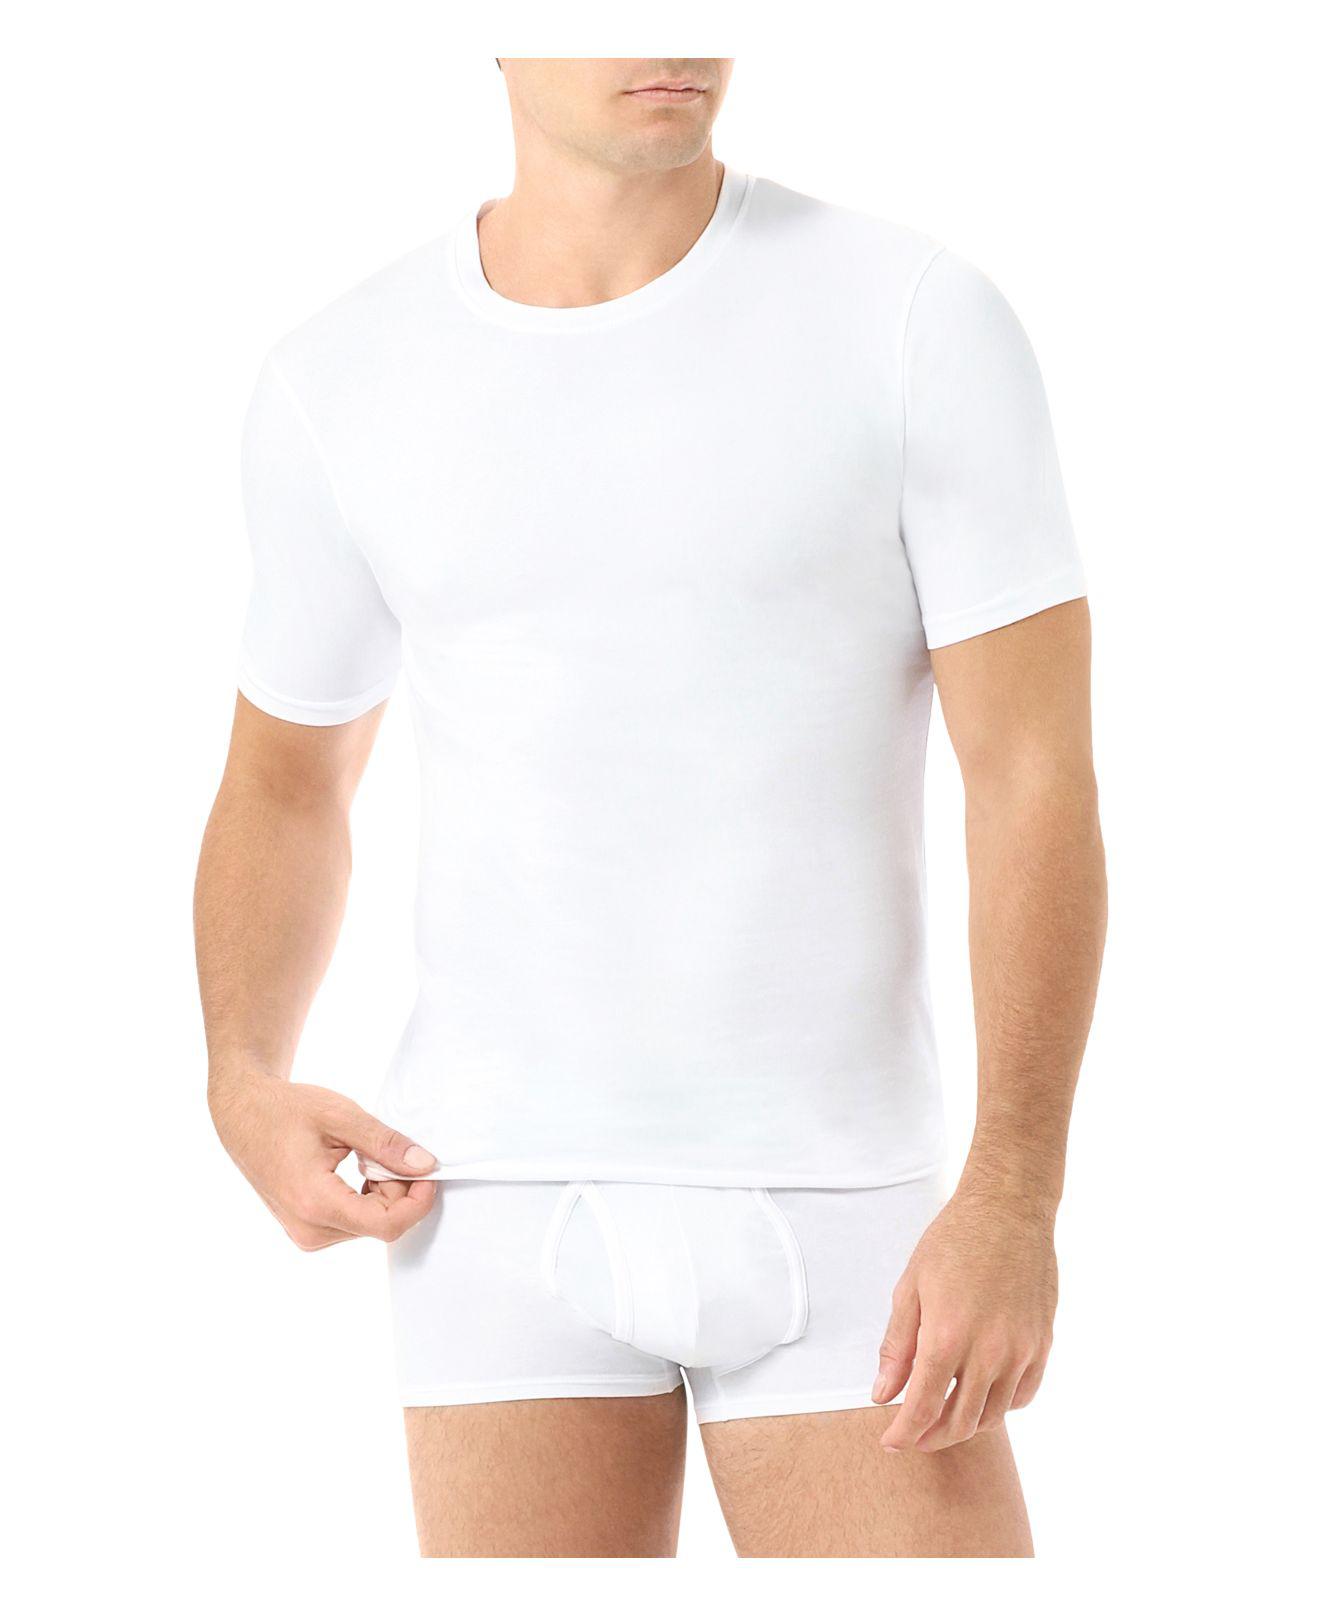 Lyst - Naked Pack Of 2 in White for Men